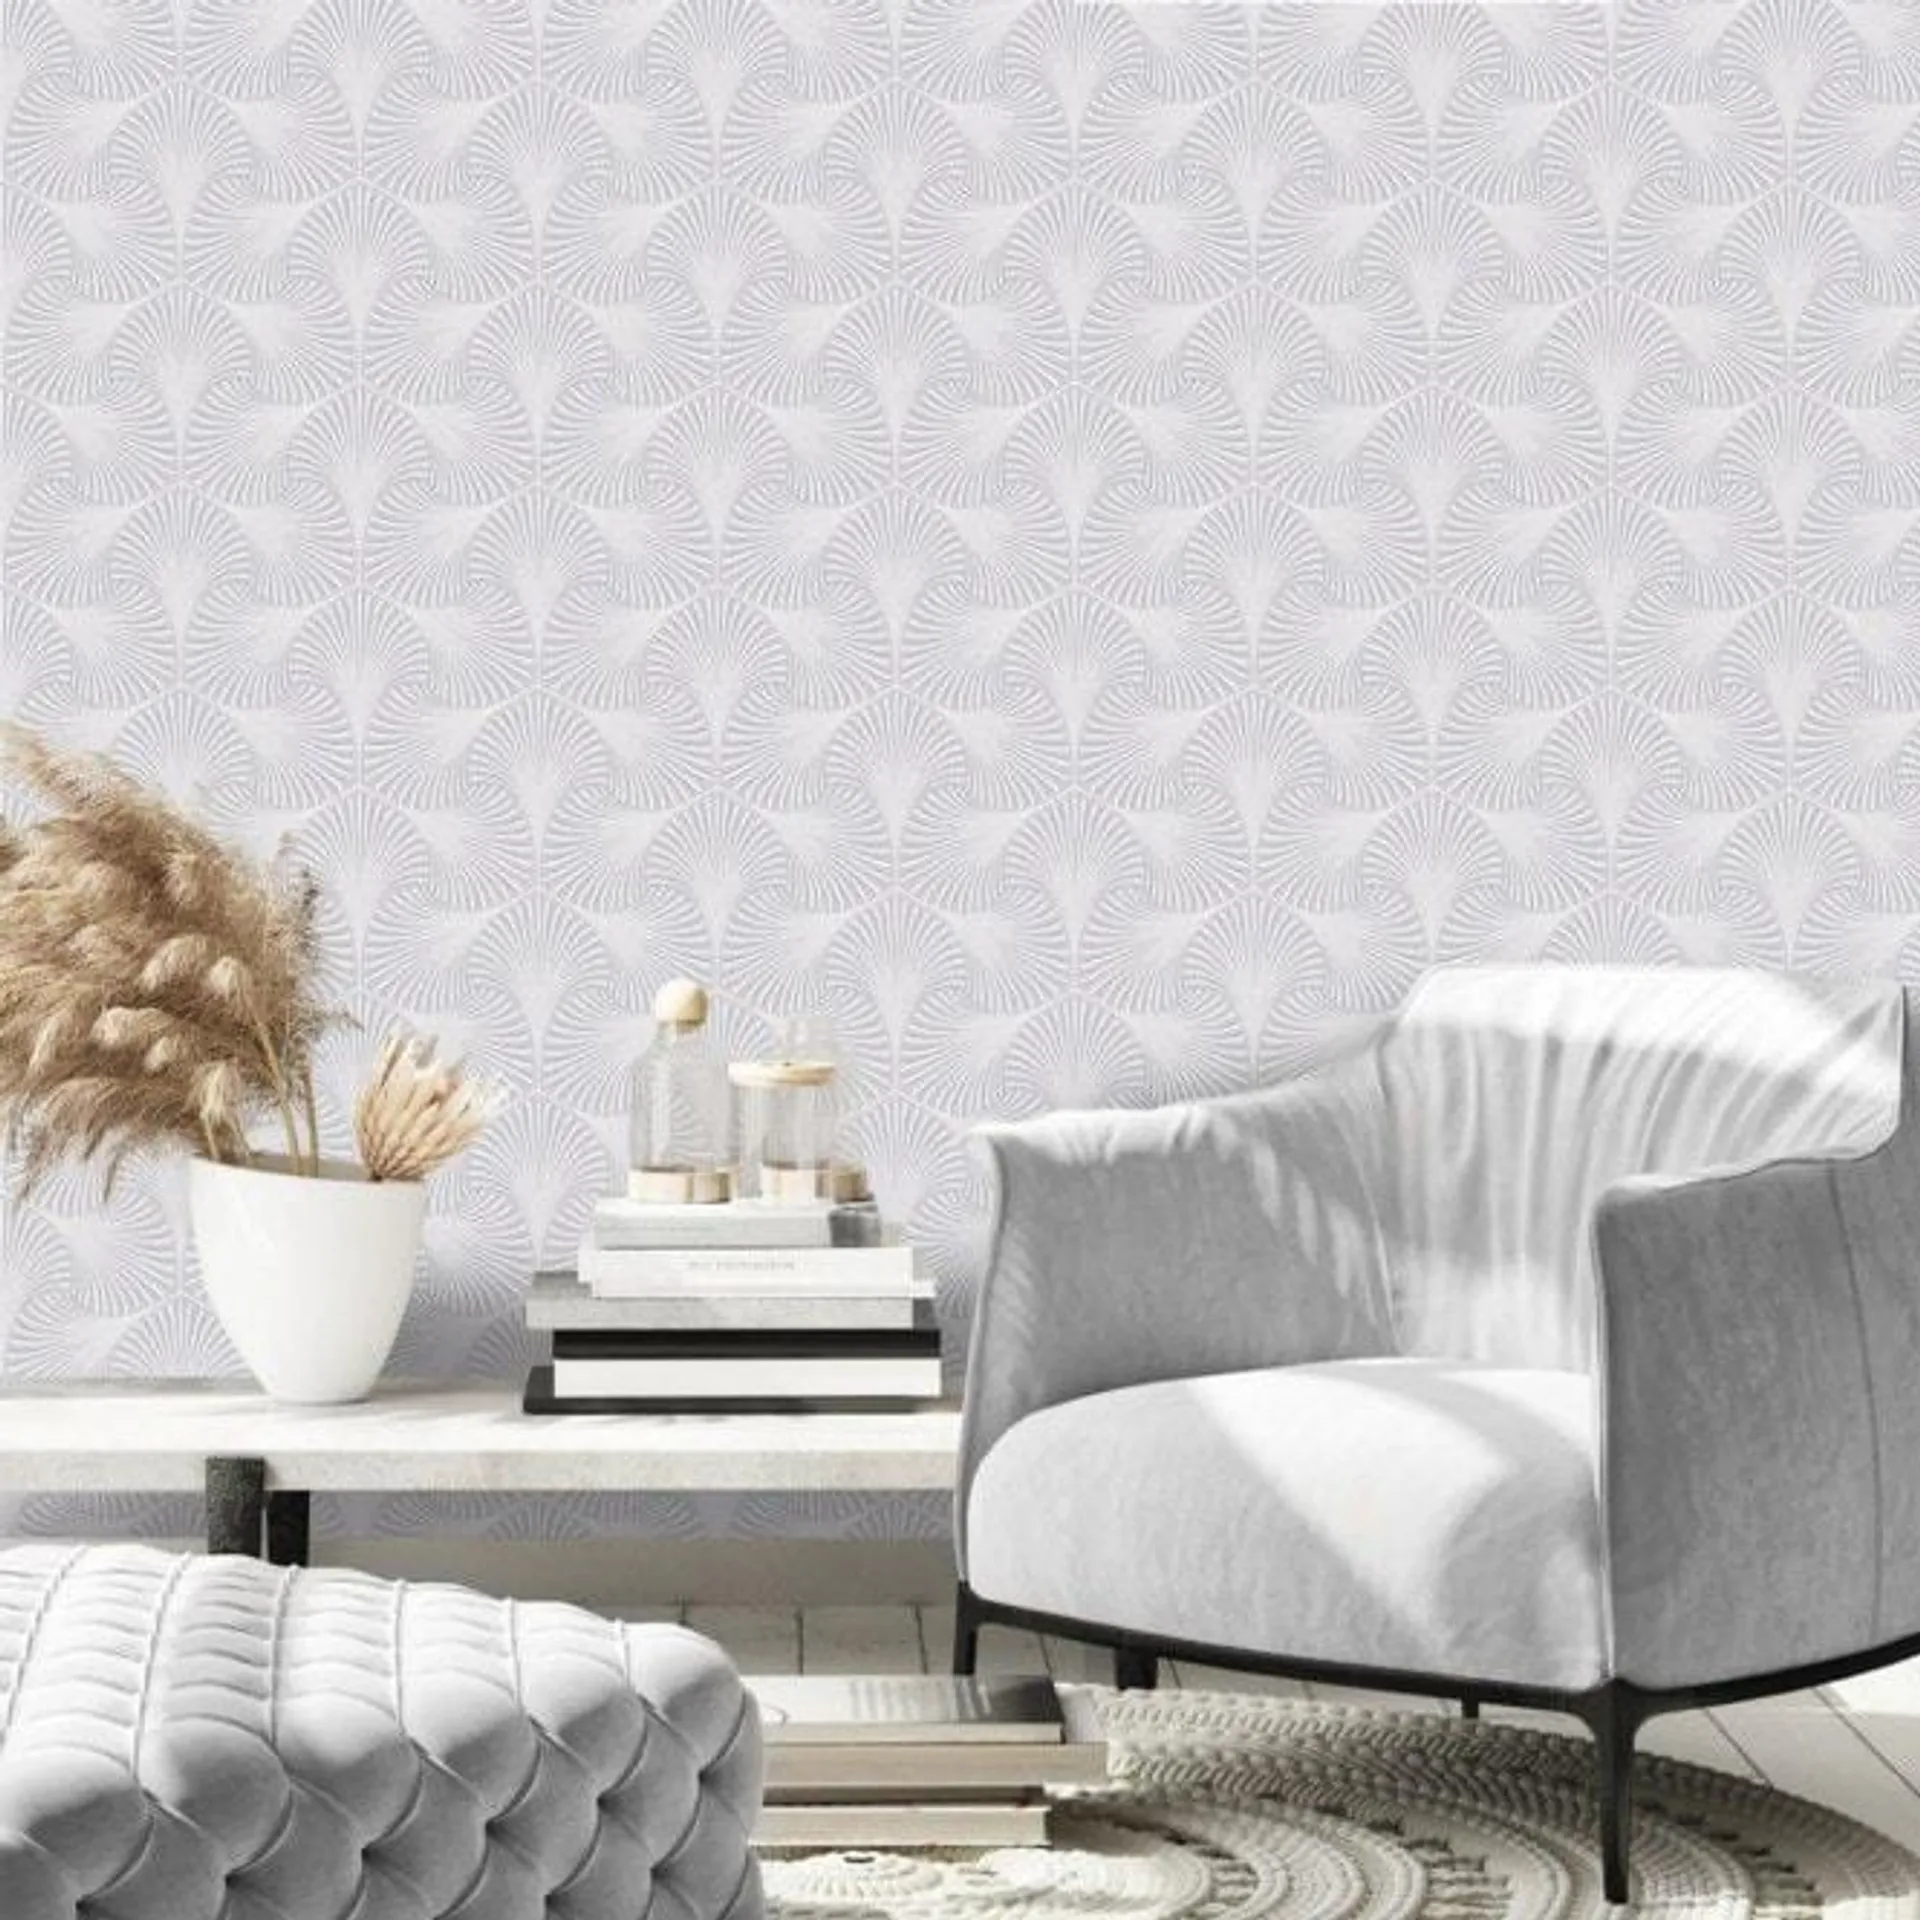 Aspen Geometric Metallic Wallpaper in Dove and Silver